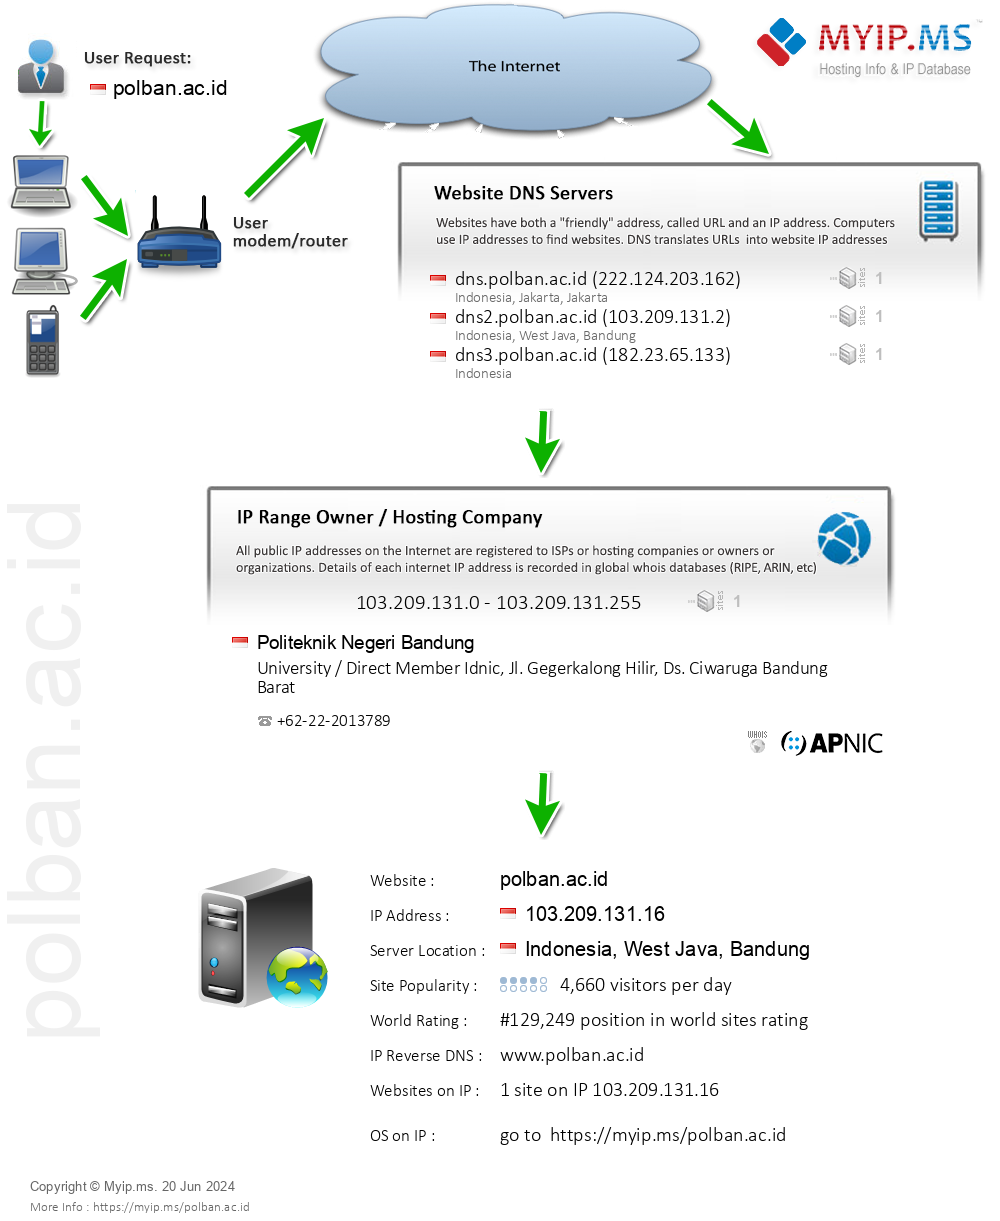 Polban.ac.id - Website Hosting Visual IP Diagram